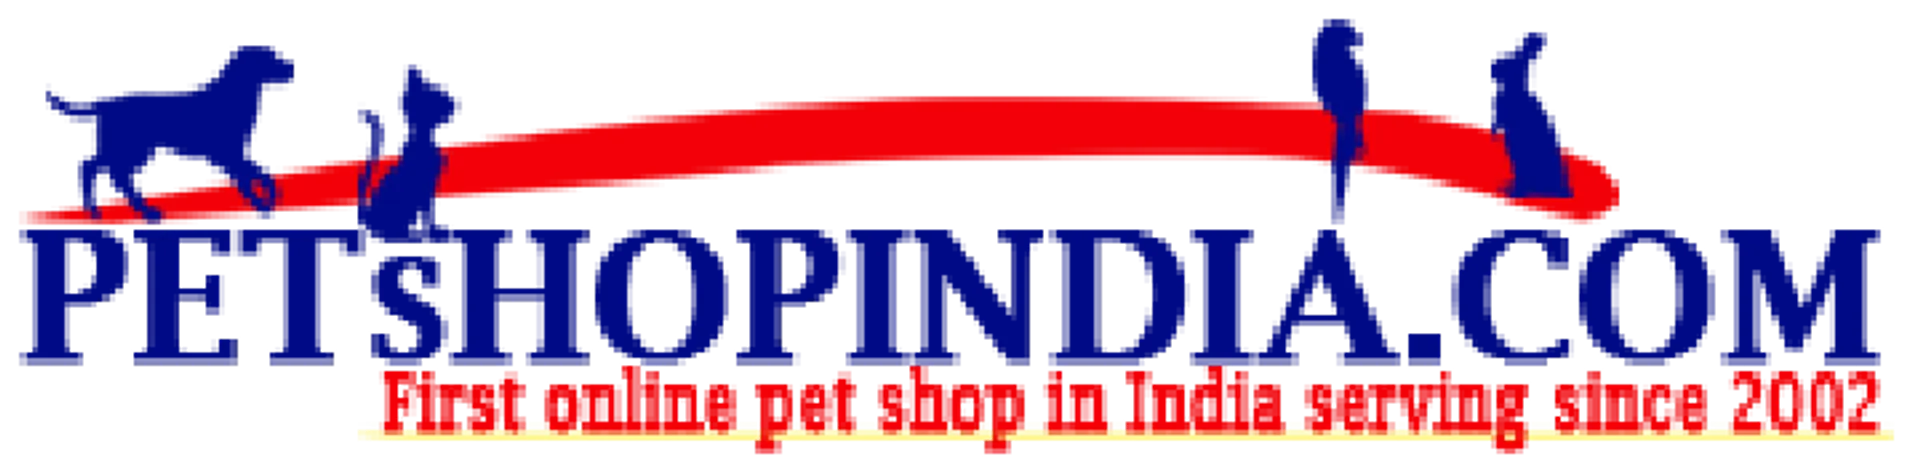 PETSHOP INDIA logo. Current catalogue